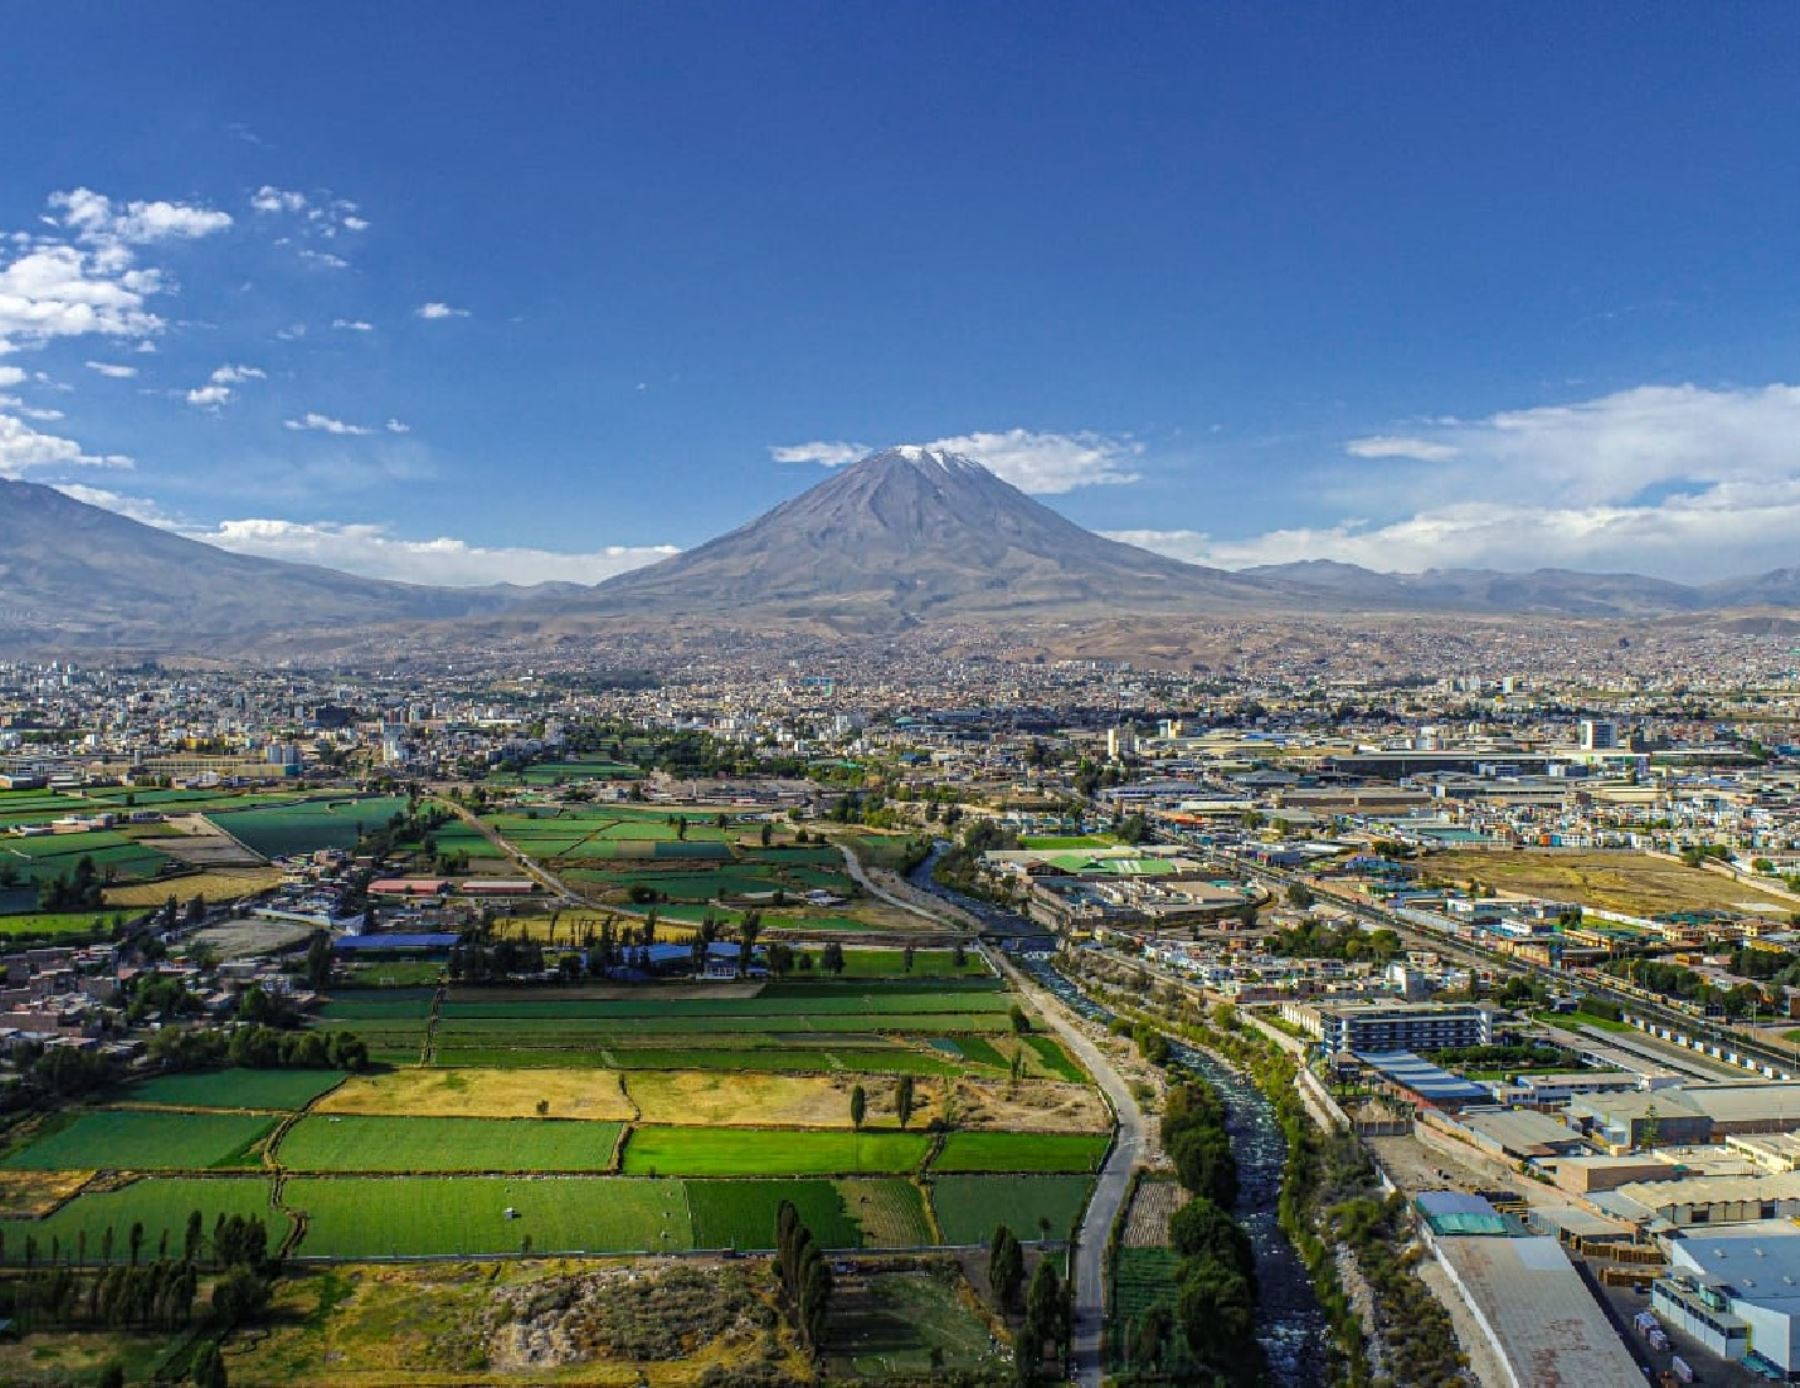 El volcán Misti es uno de los emblemas de la ciudad de Arequipa que hoy celebra su 483 aniversario de fundación española.